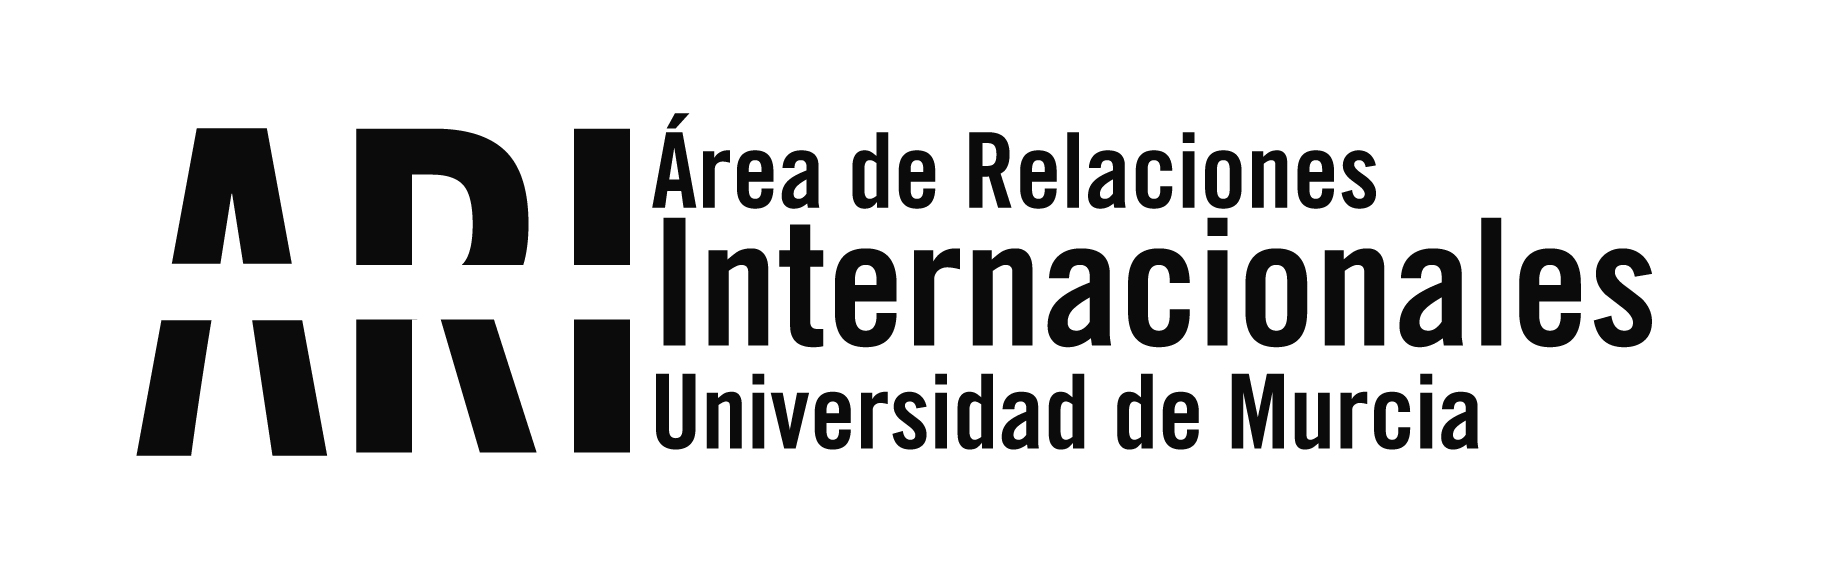 La UMU volverá a estar presente en la Conferencia Anual de NAFSA 2021 sobre educación internacional y movilidad - Área de Relaciones Internacionales